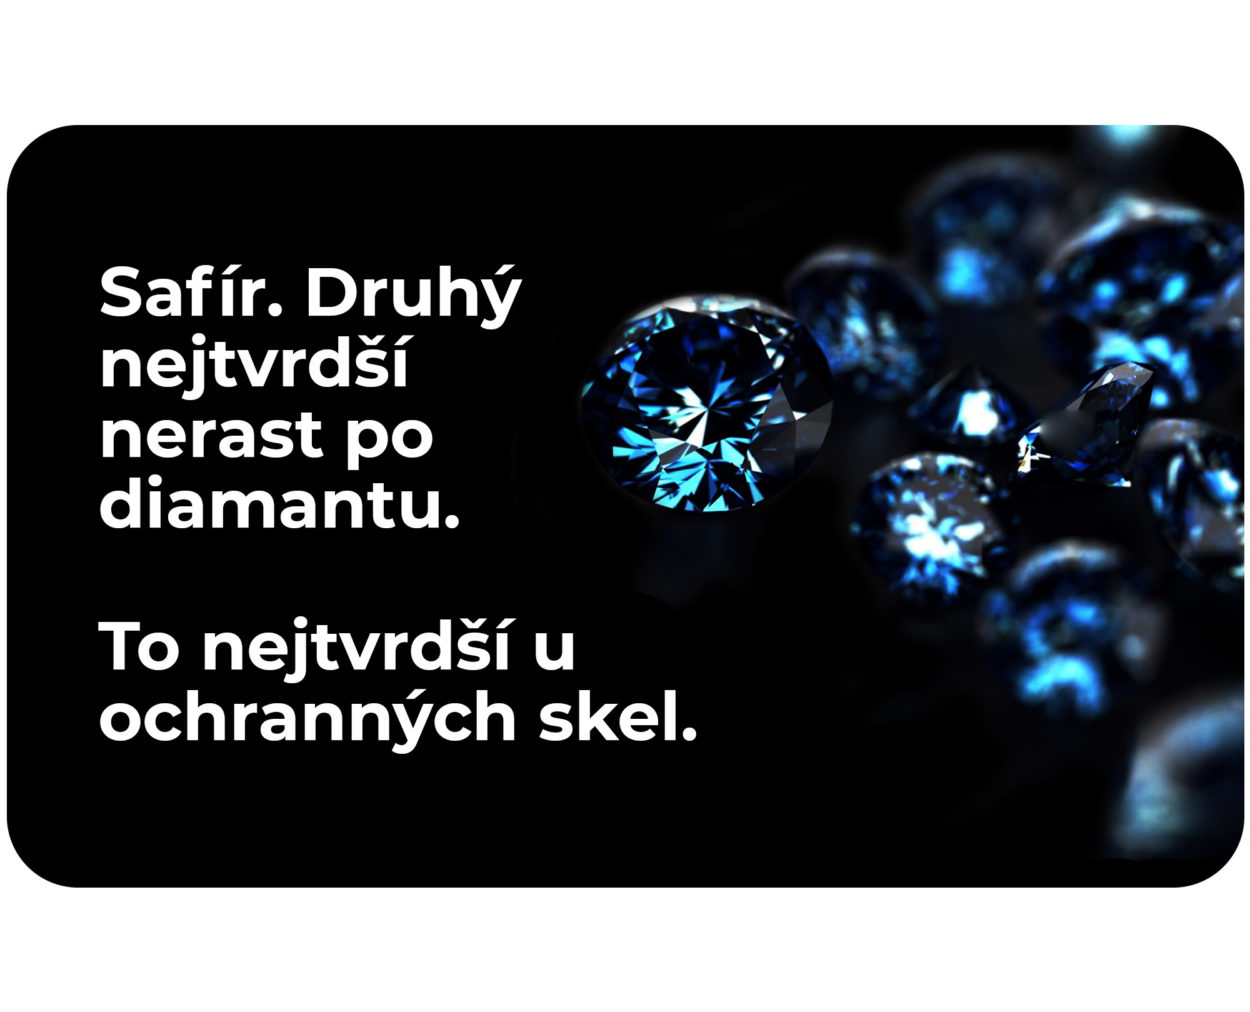 Ochranné sklo - Heureka.sk | Elektronika | Mobily GPS | Mobilné a telefónne príslušenstvo | Tvrdené sklá pre mobilné telefóny